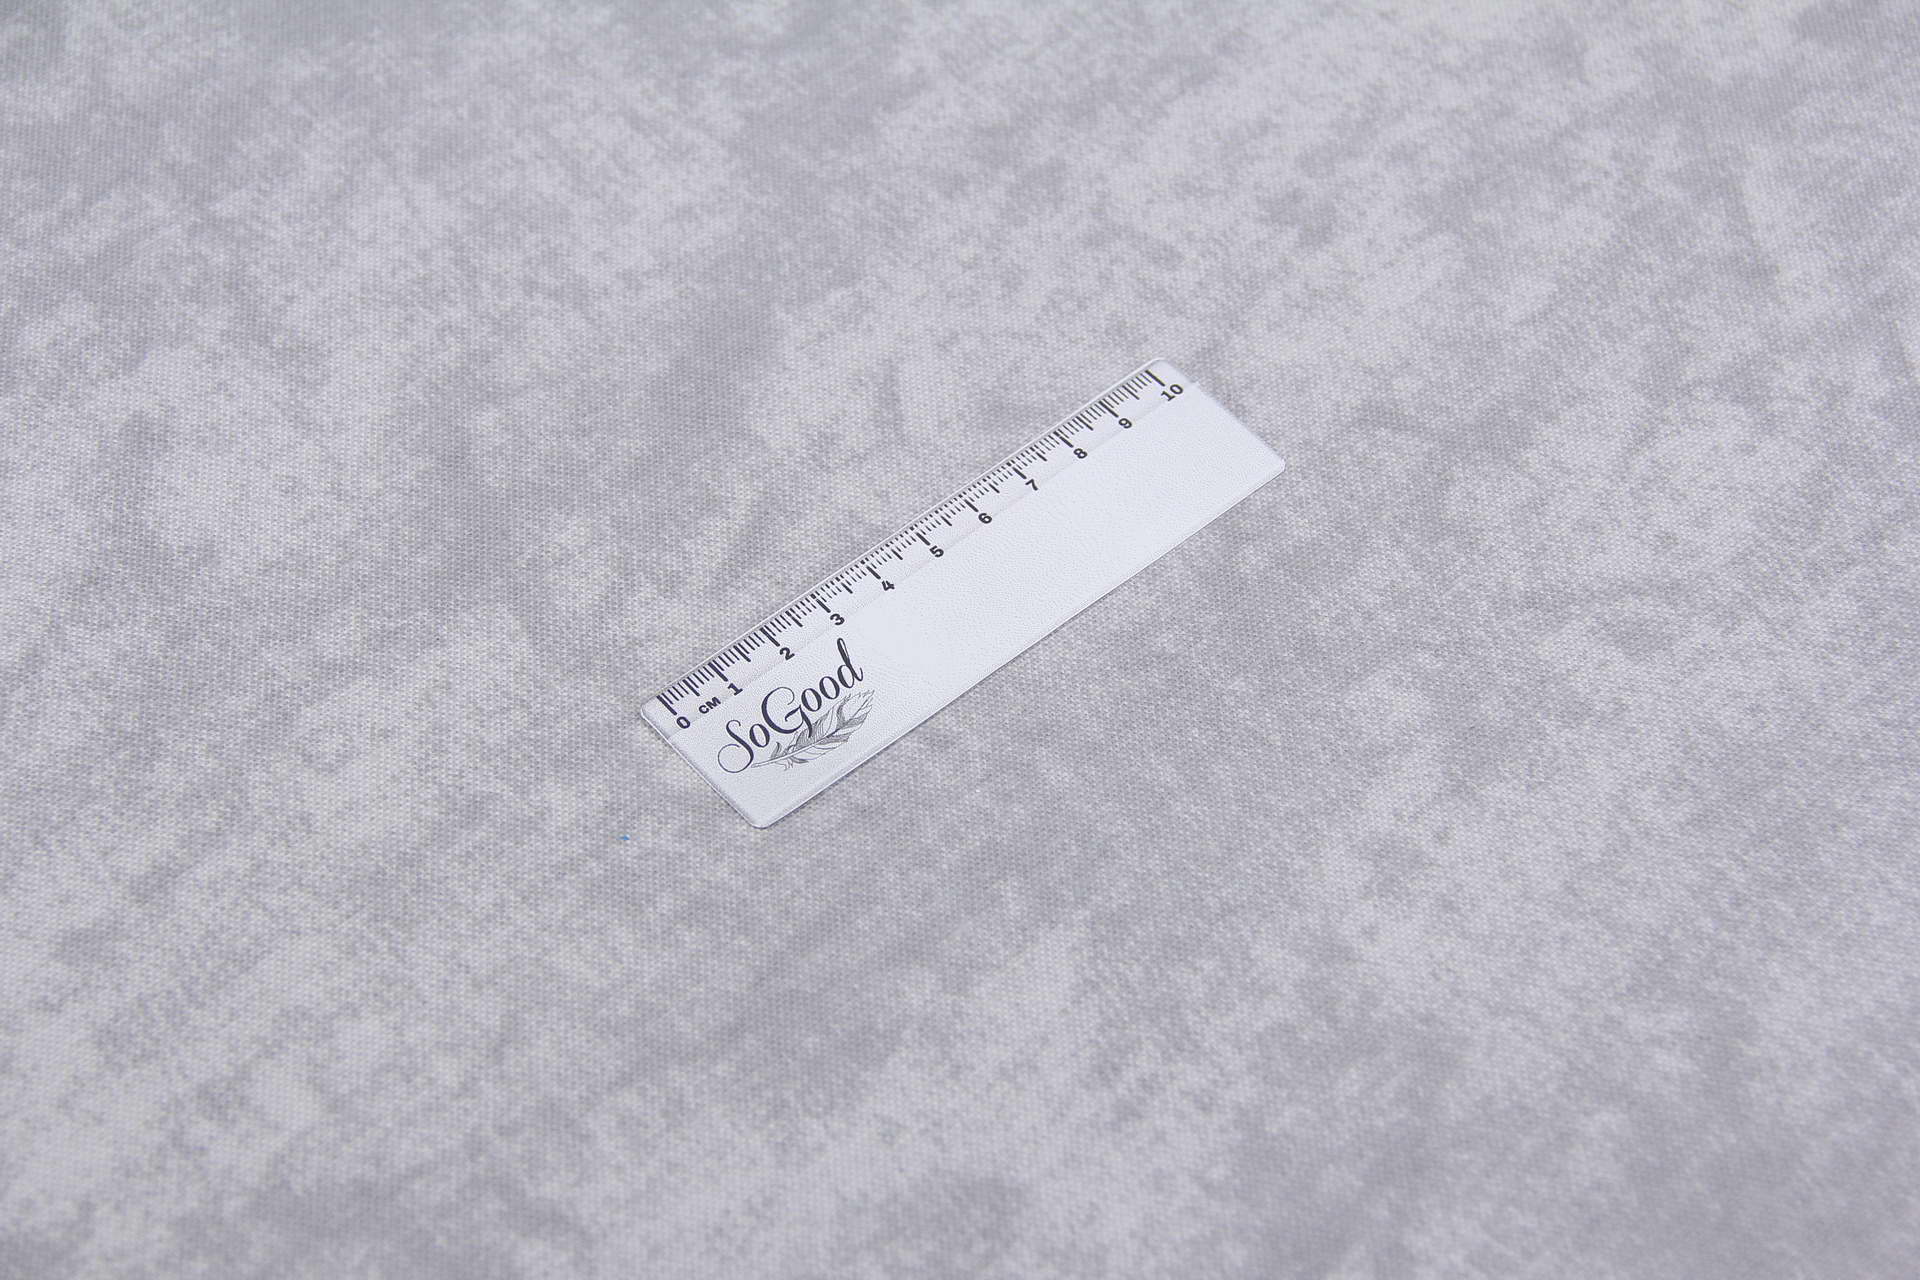 Ткань скатертная с тефлоновой пропиткой Травертин Светло-серый V4